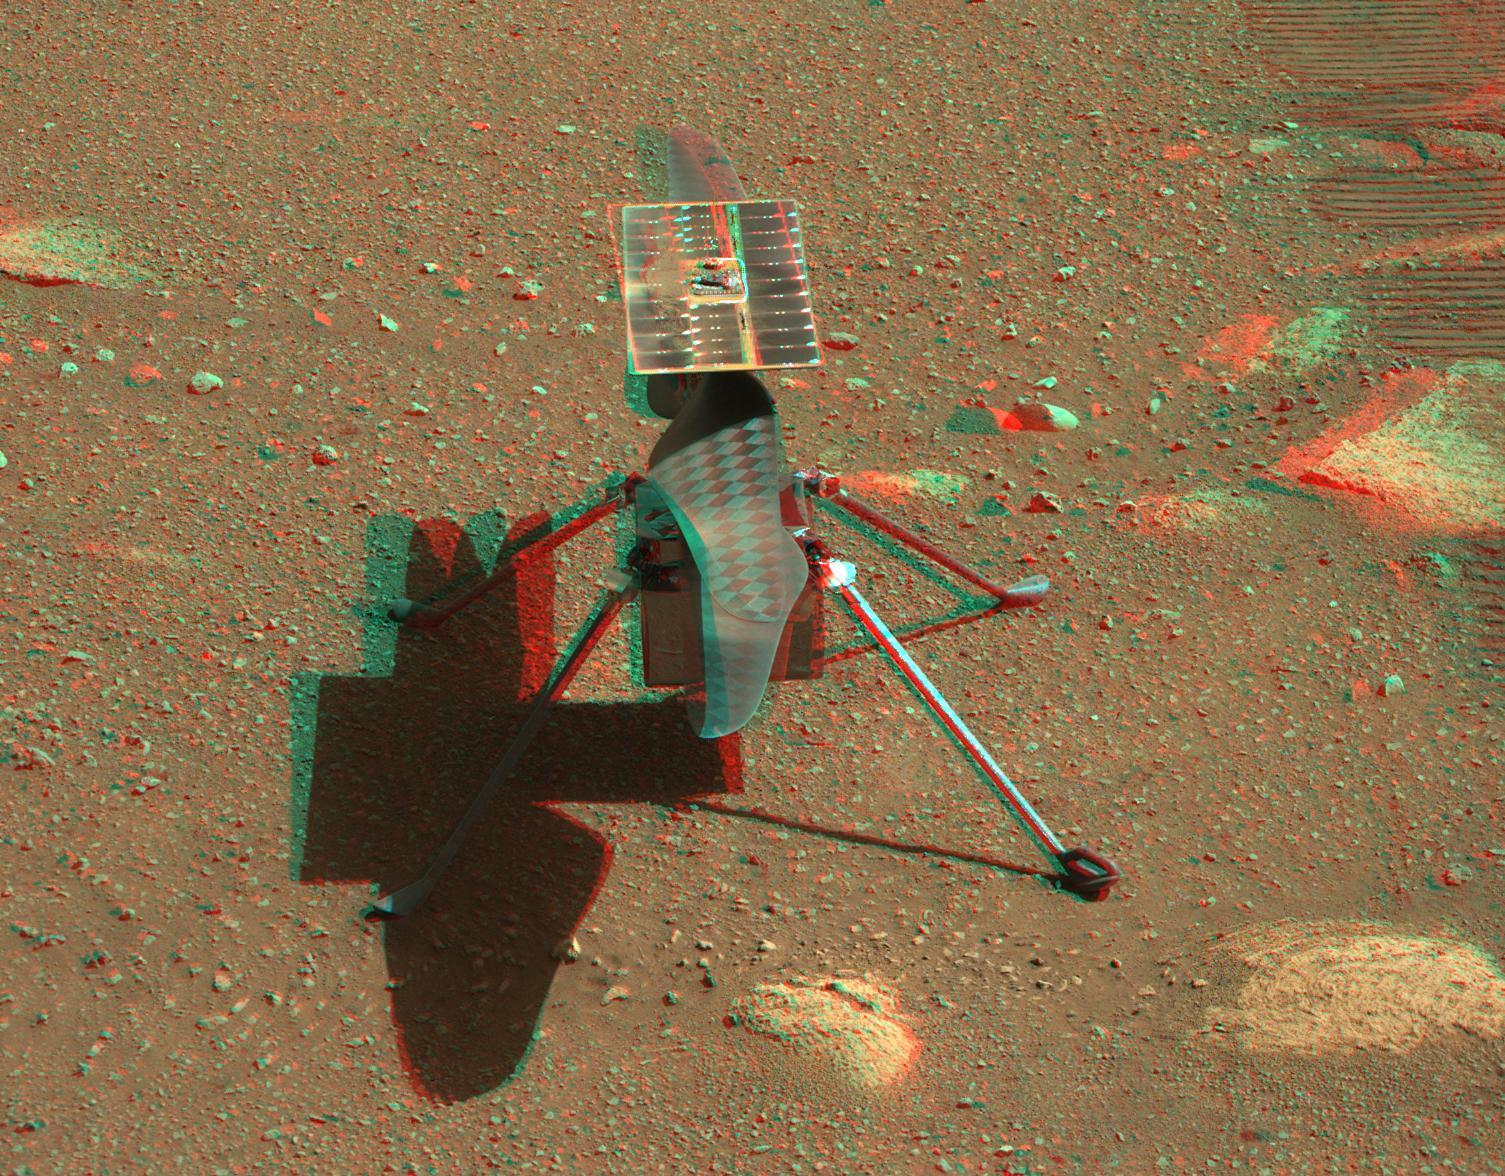 صورة مجسّمة تستهدف النظارات الحمراء/الزرقاء لمروحيّة البراعة المرّيخية، تظهر فيها المروحيّة ملقيةً بظلالها على السطح المرّيخي لوحدها على أرجل هبوطها الأربعة قرب مسارات العربة الجوّالة، وفي أعلاها لوح شمسي وتحته زوج شفراتها متضادّة الدوران التي طولها 1.2 متر